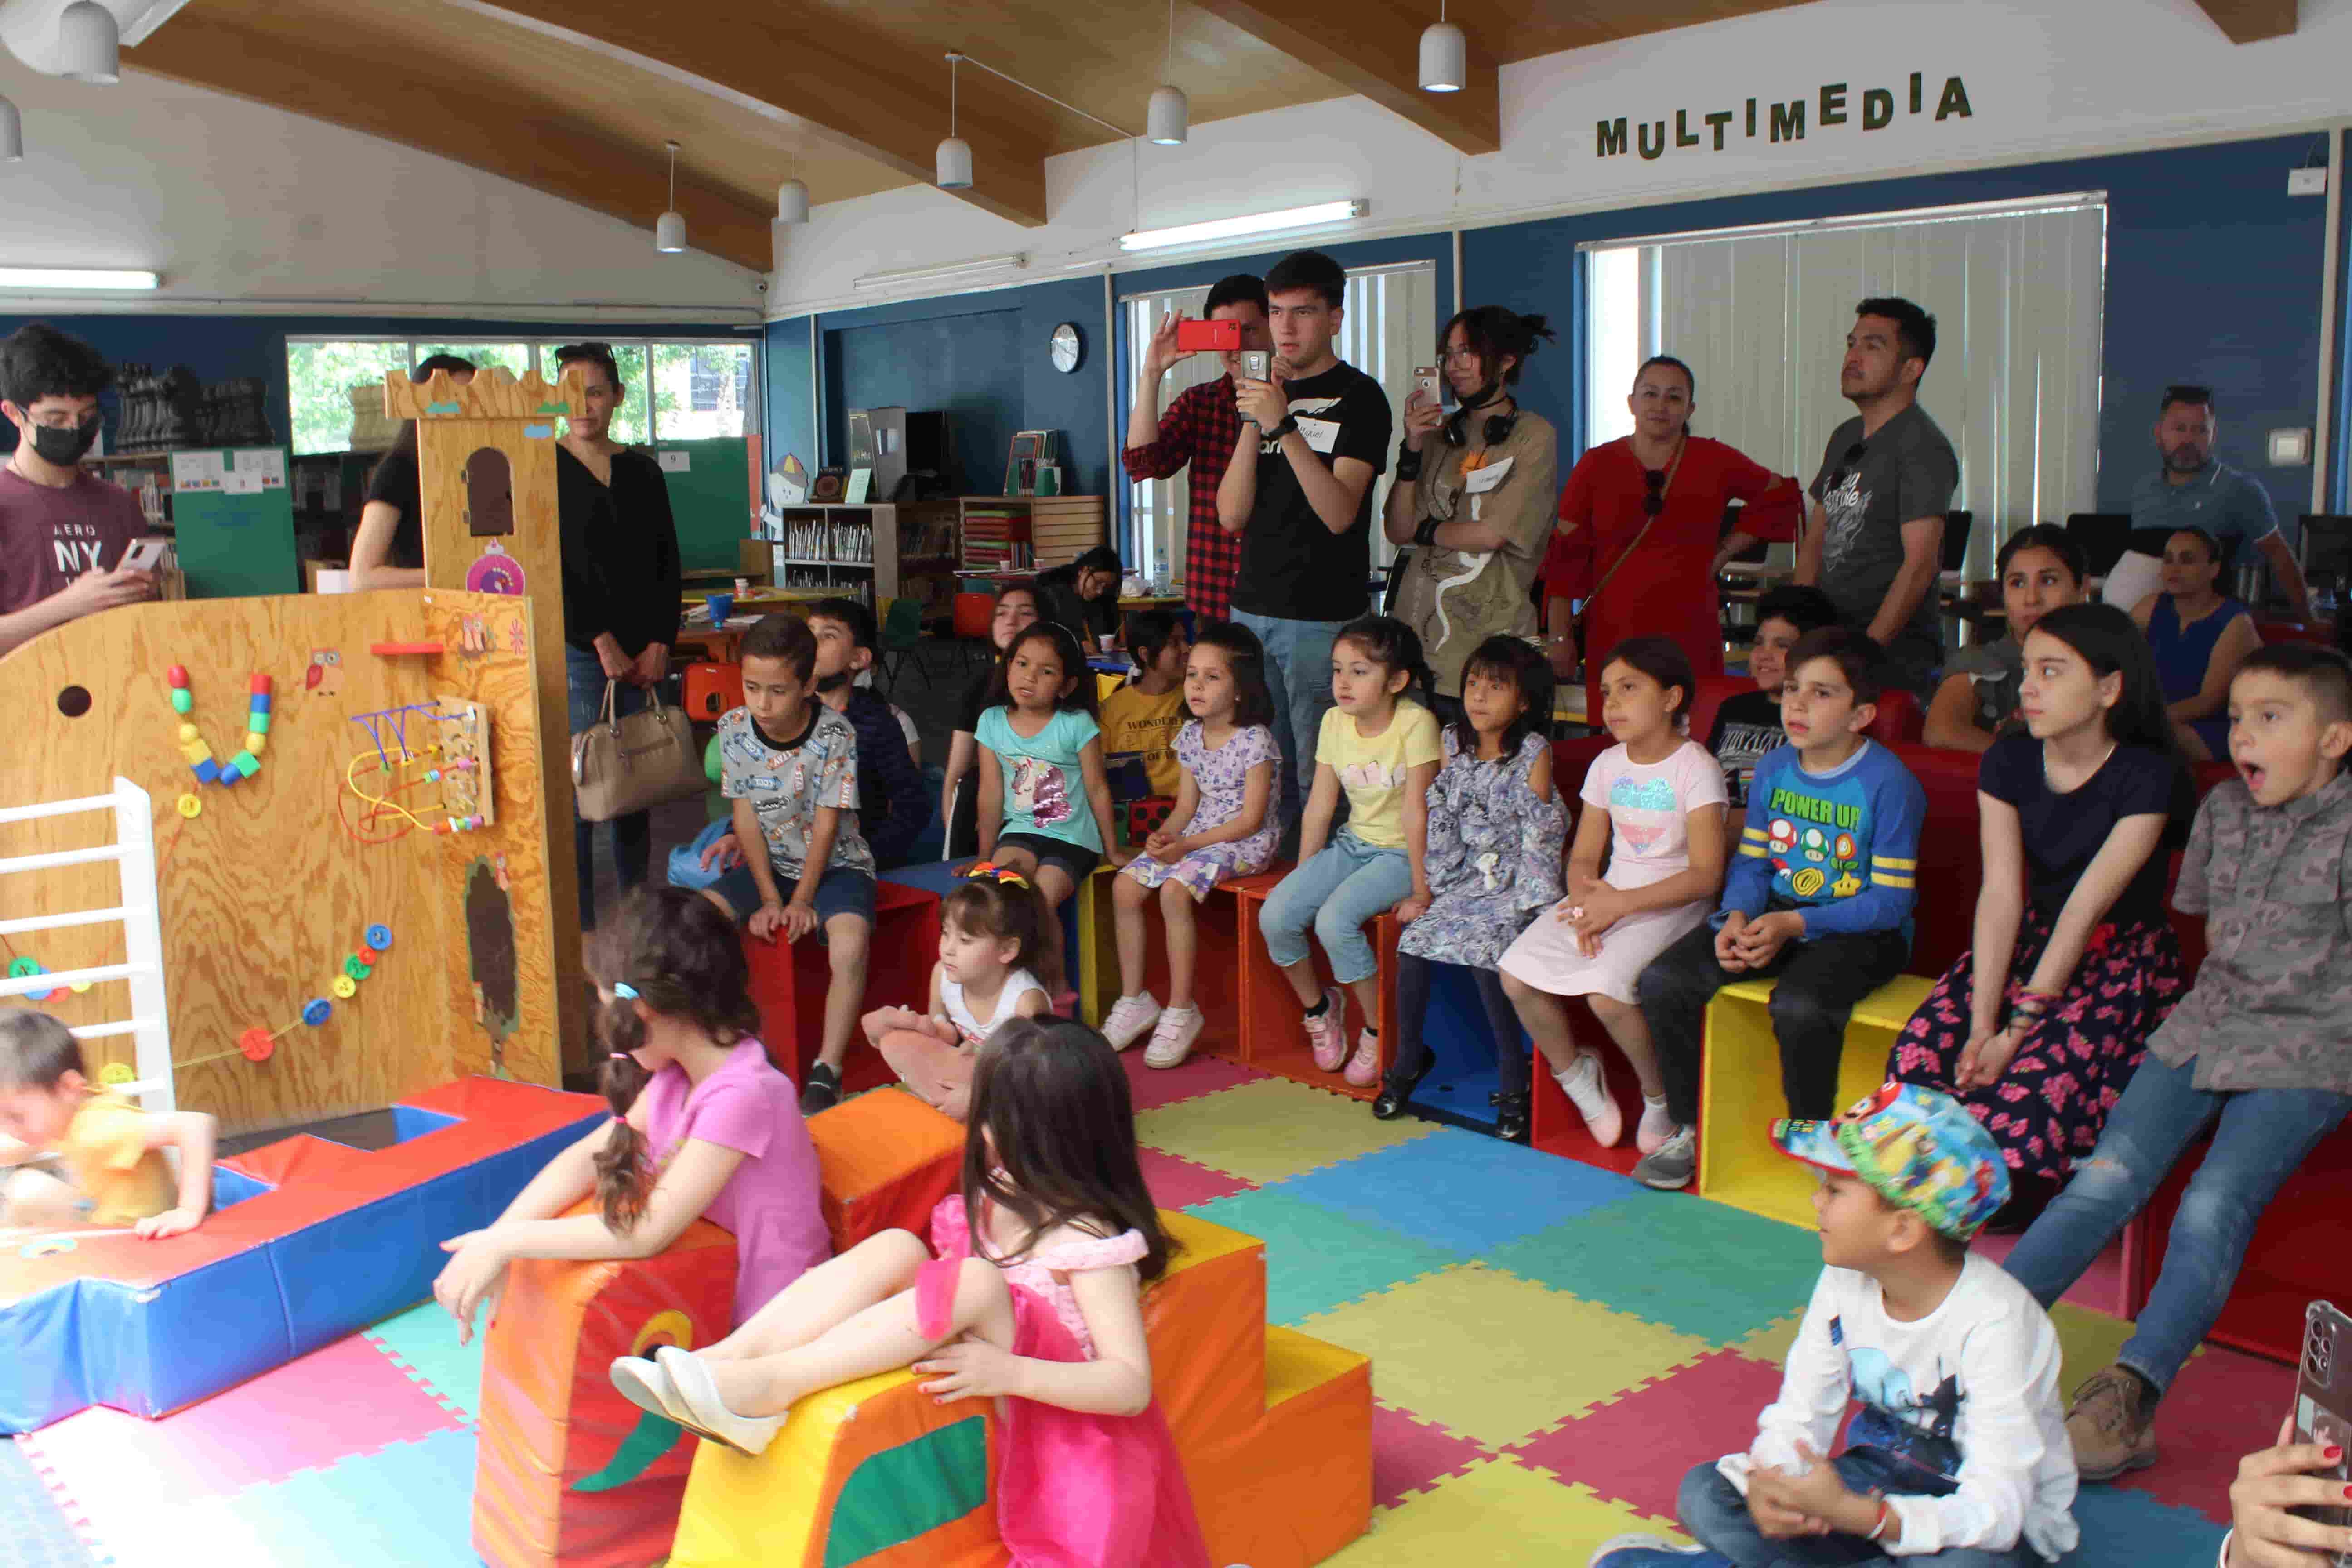 Ofrece Biblioteca Infantil actividades lúdicas gratuitas durante el mes de mayo